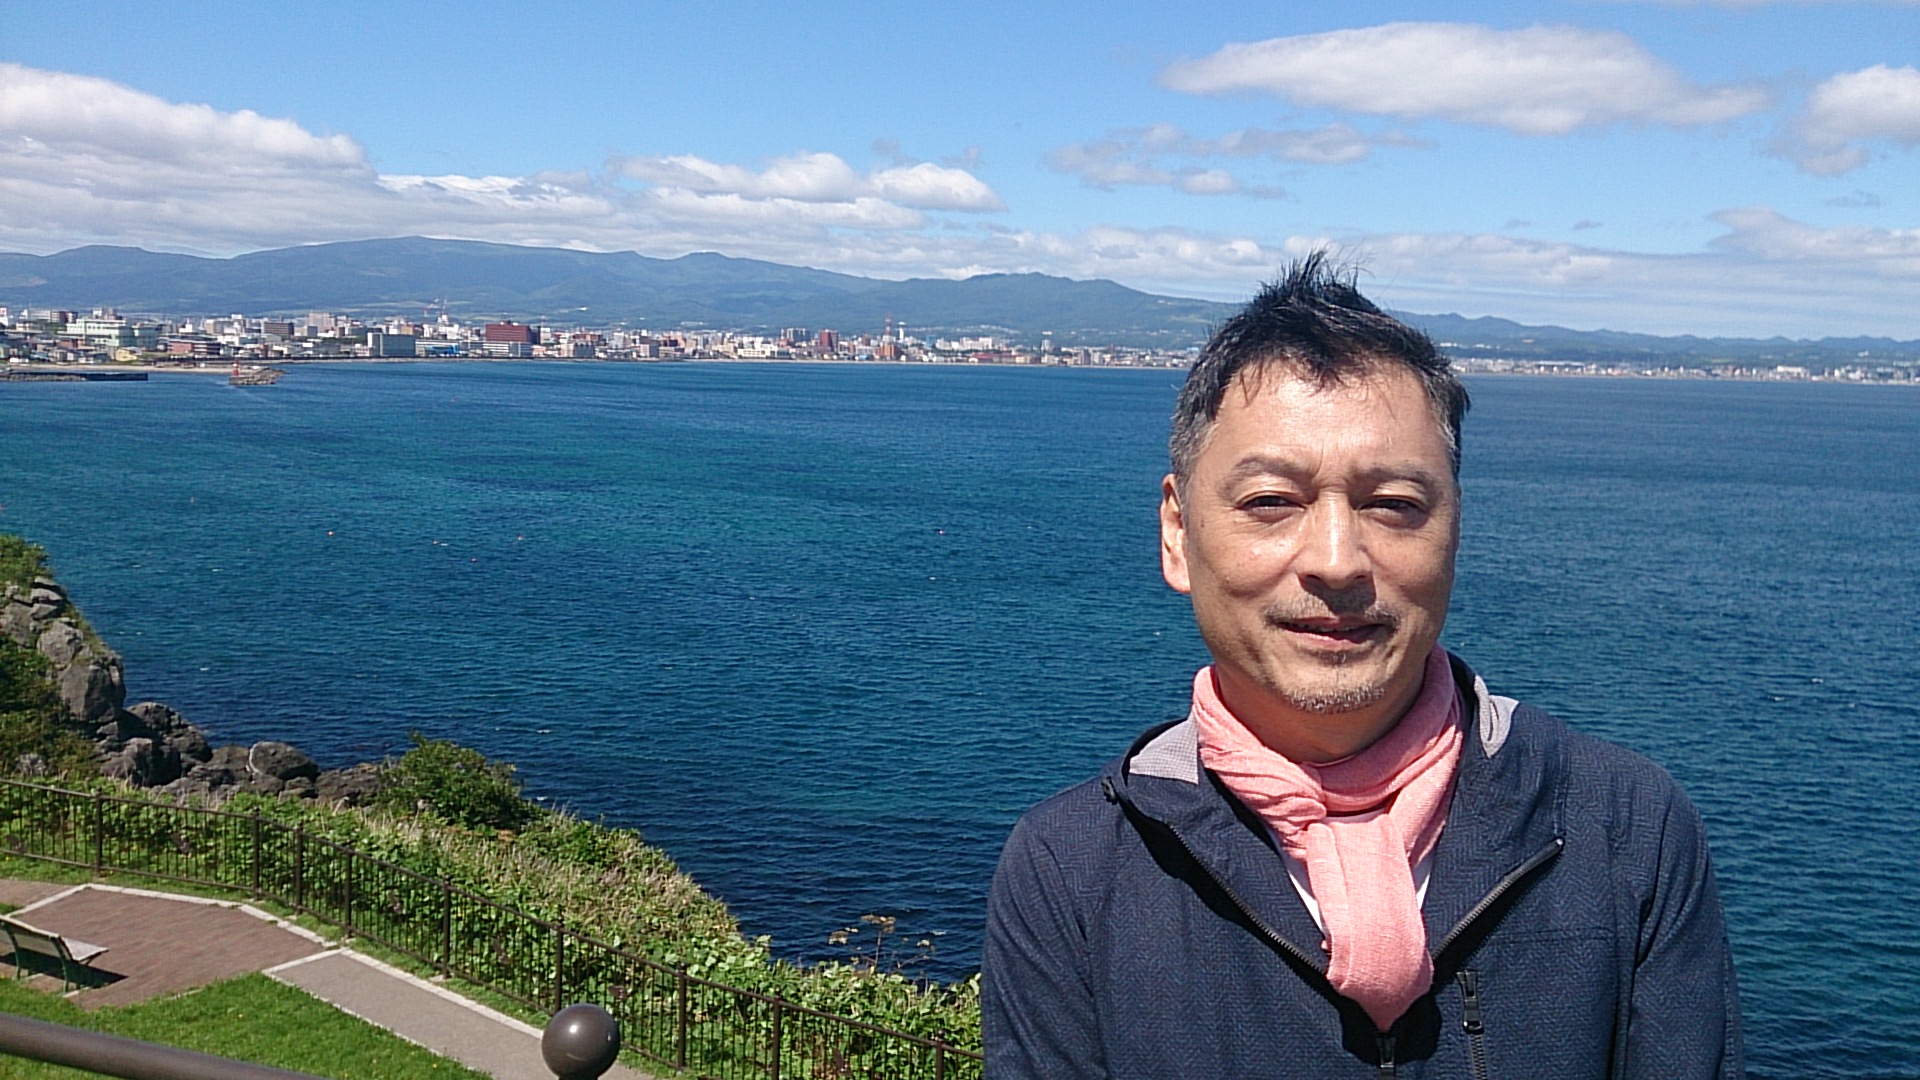 函館から津軽海峡を望む